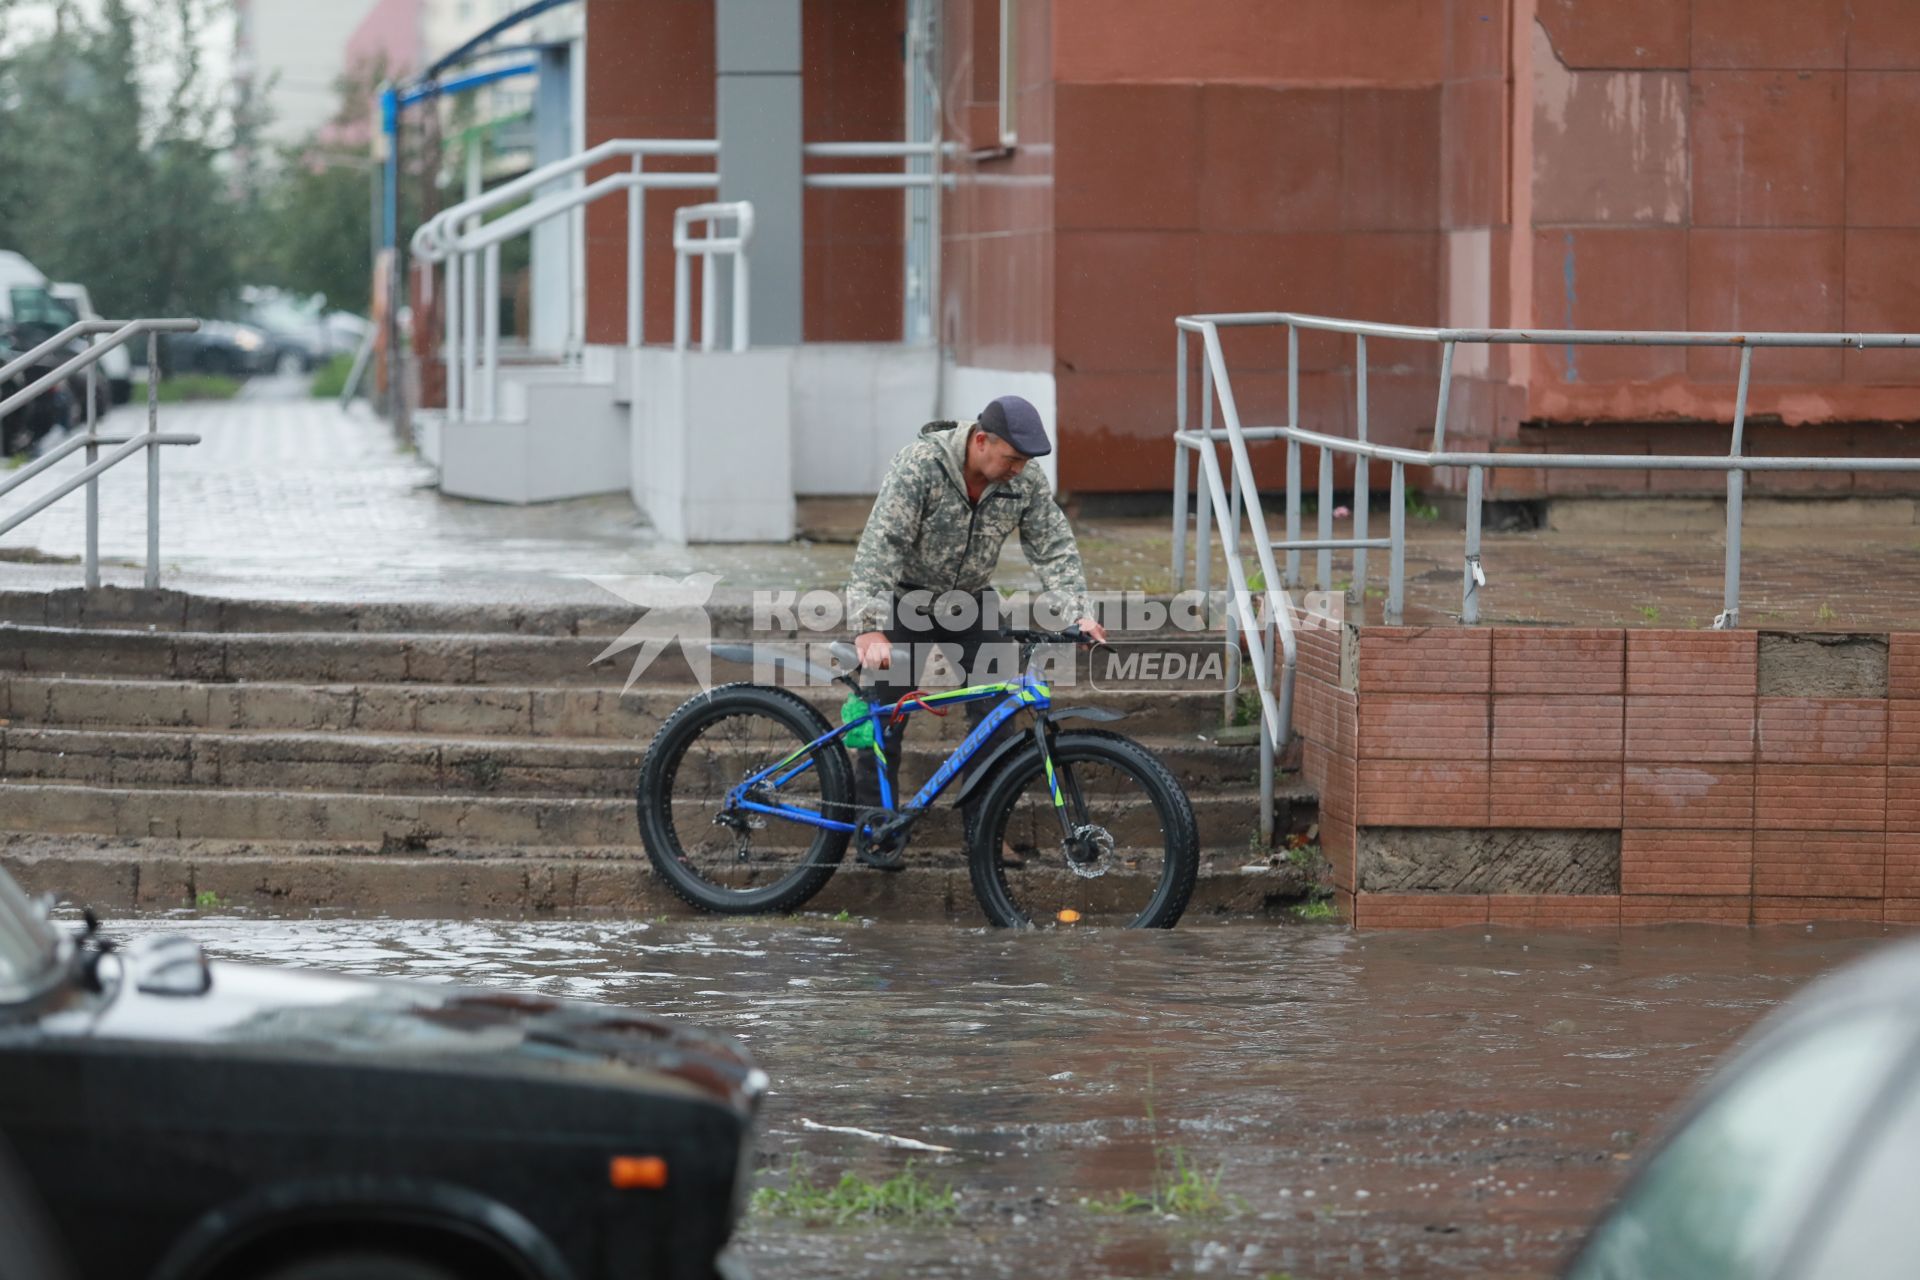 Красноярск. Велосипедист на улице во время дождя.